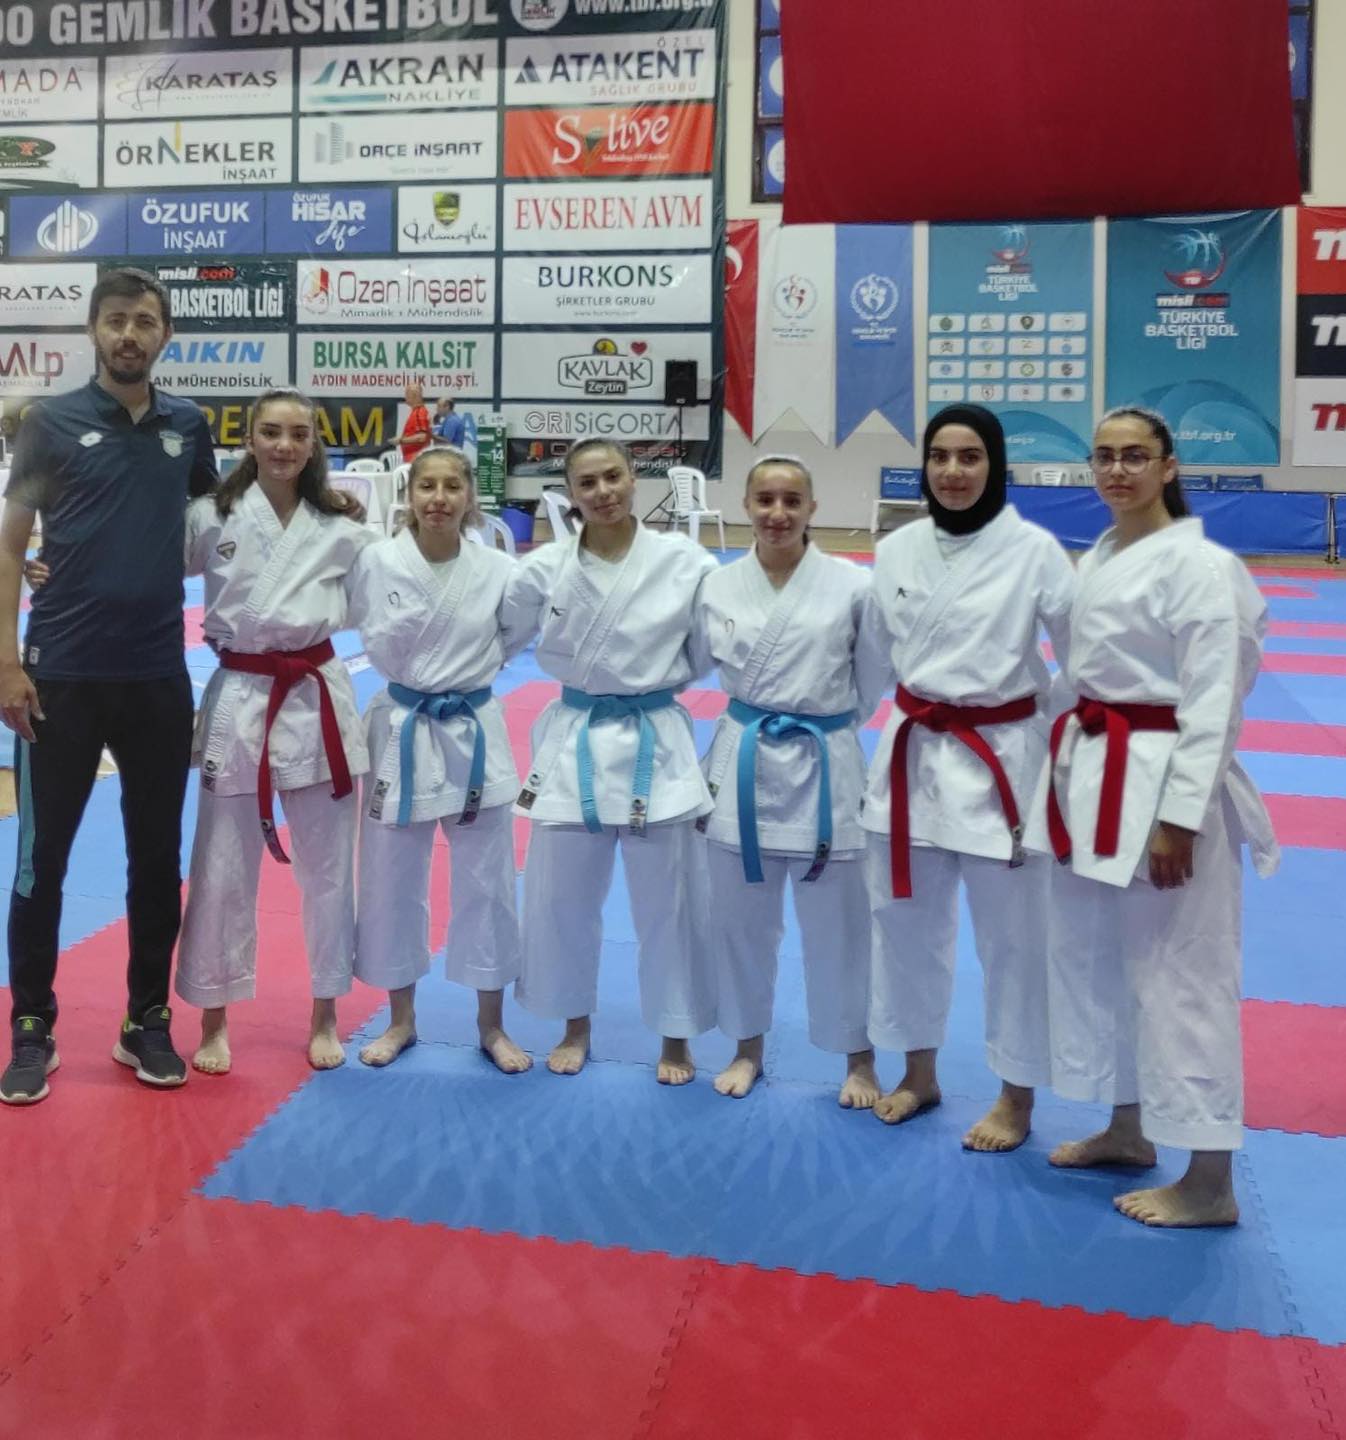 Gemlik'te gerçekleştirilen Turnuvada Karatecilerimizden 9 Madalya